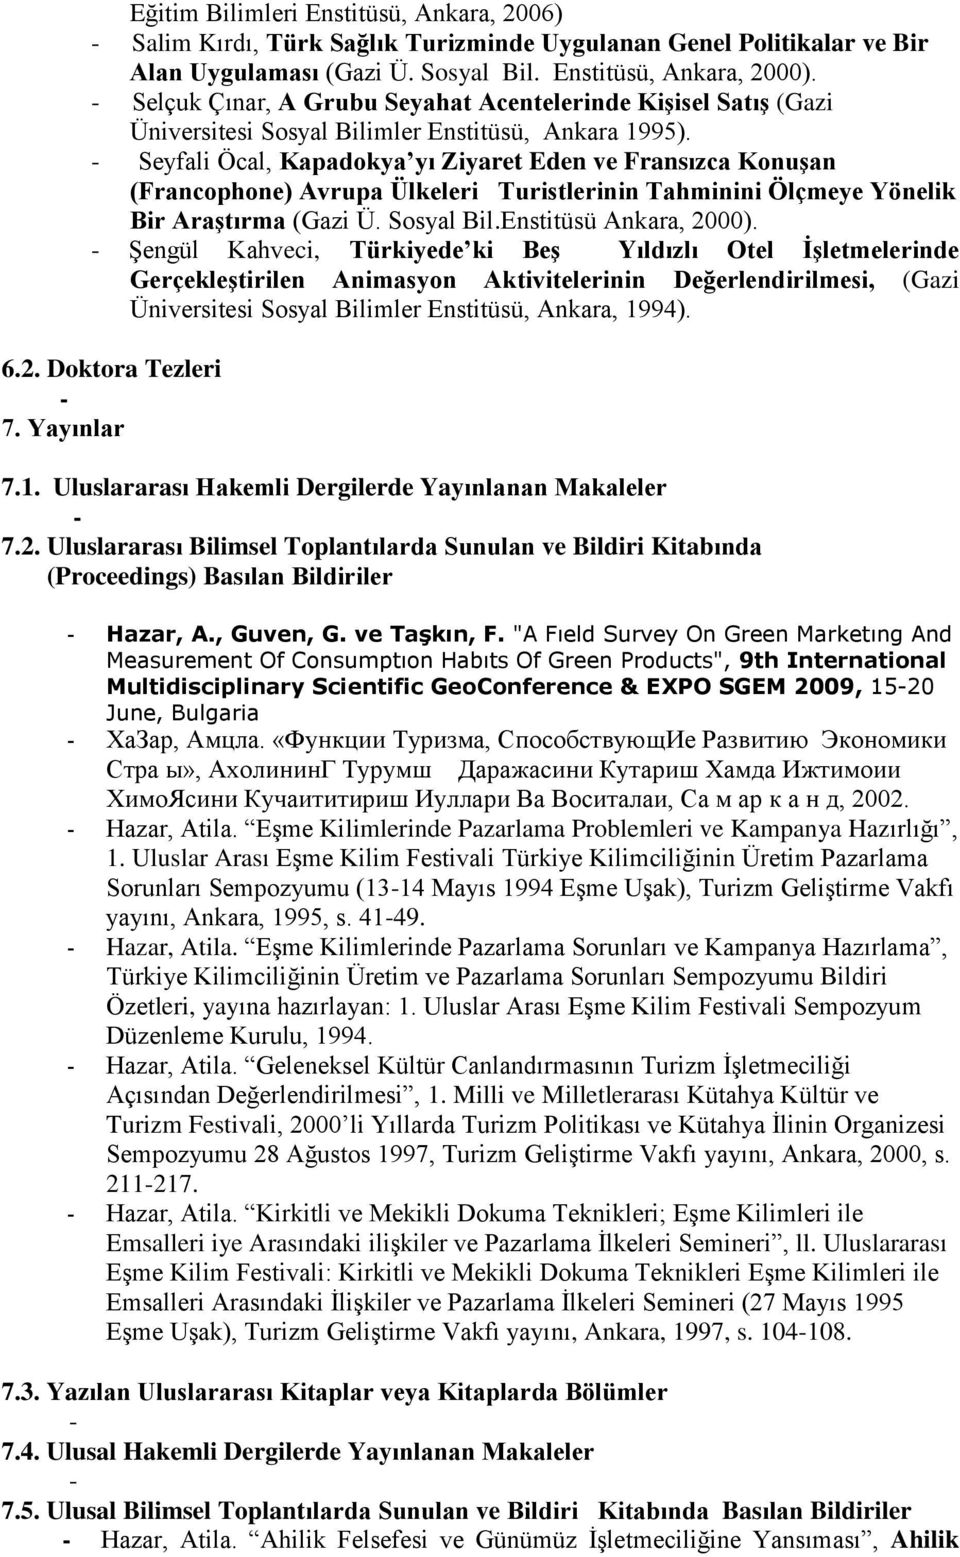 Seyfali Öcal, Kapadokya yı Ziyaret Eden ve Fransızca Konuşan (Francophone) Avrupa Ülkeleri Turistlerinin Tahminini Ölçmeye Yönelik Bir Araştırma (Gazi Ü. Sosyal Bil.Enstitüsü Ankara, 2000).